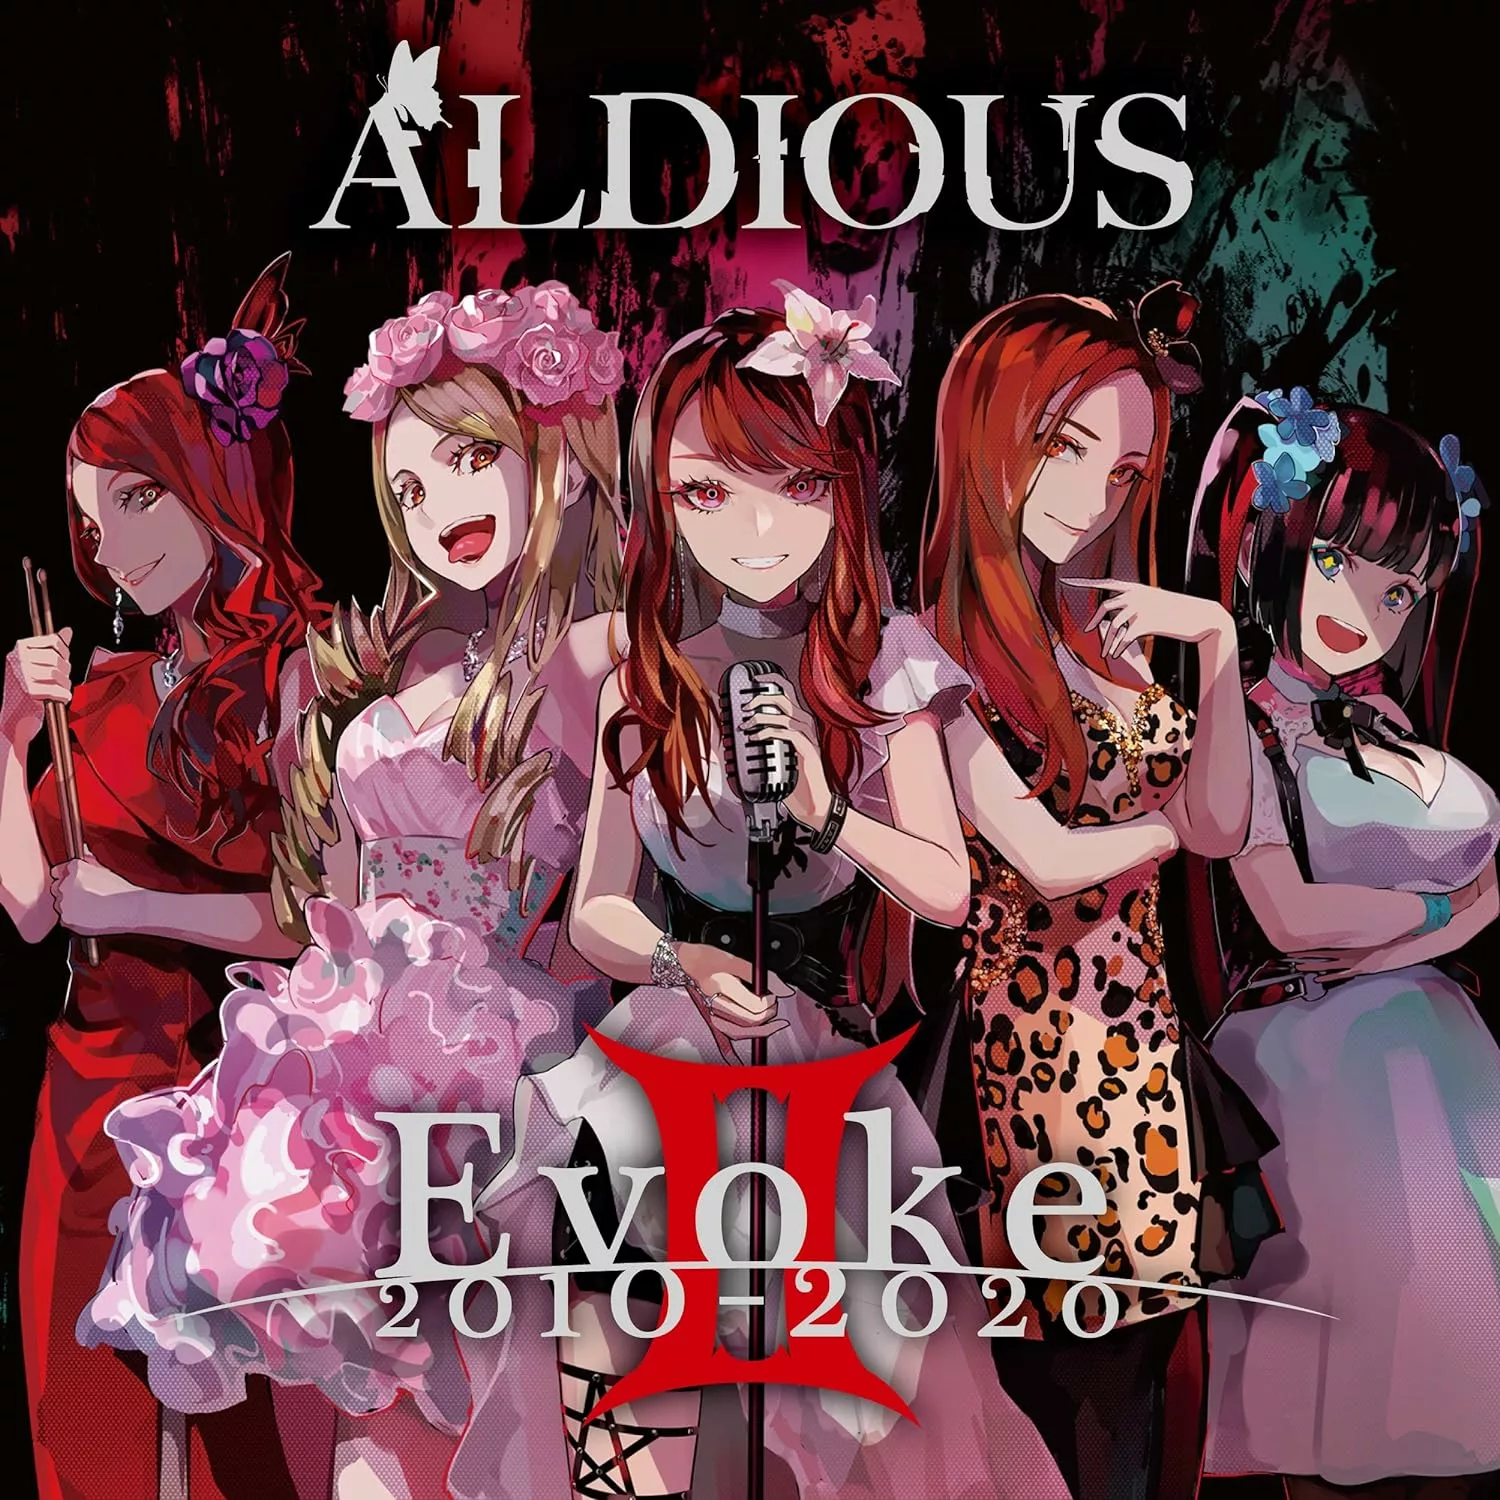 ALDIOUS - Evoke II 2010-2020  [CD] - Imagen 1 de 1